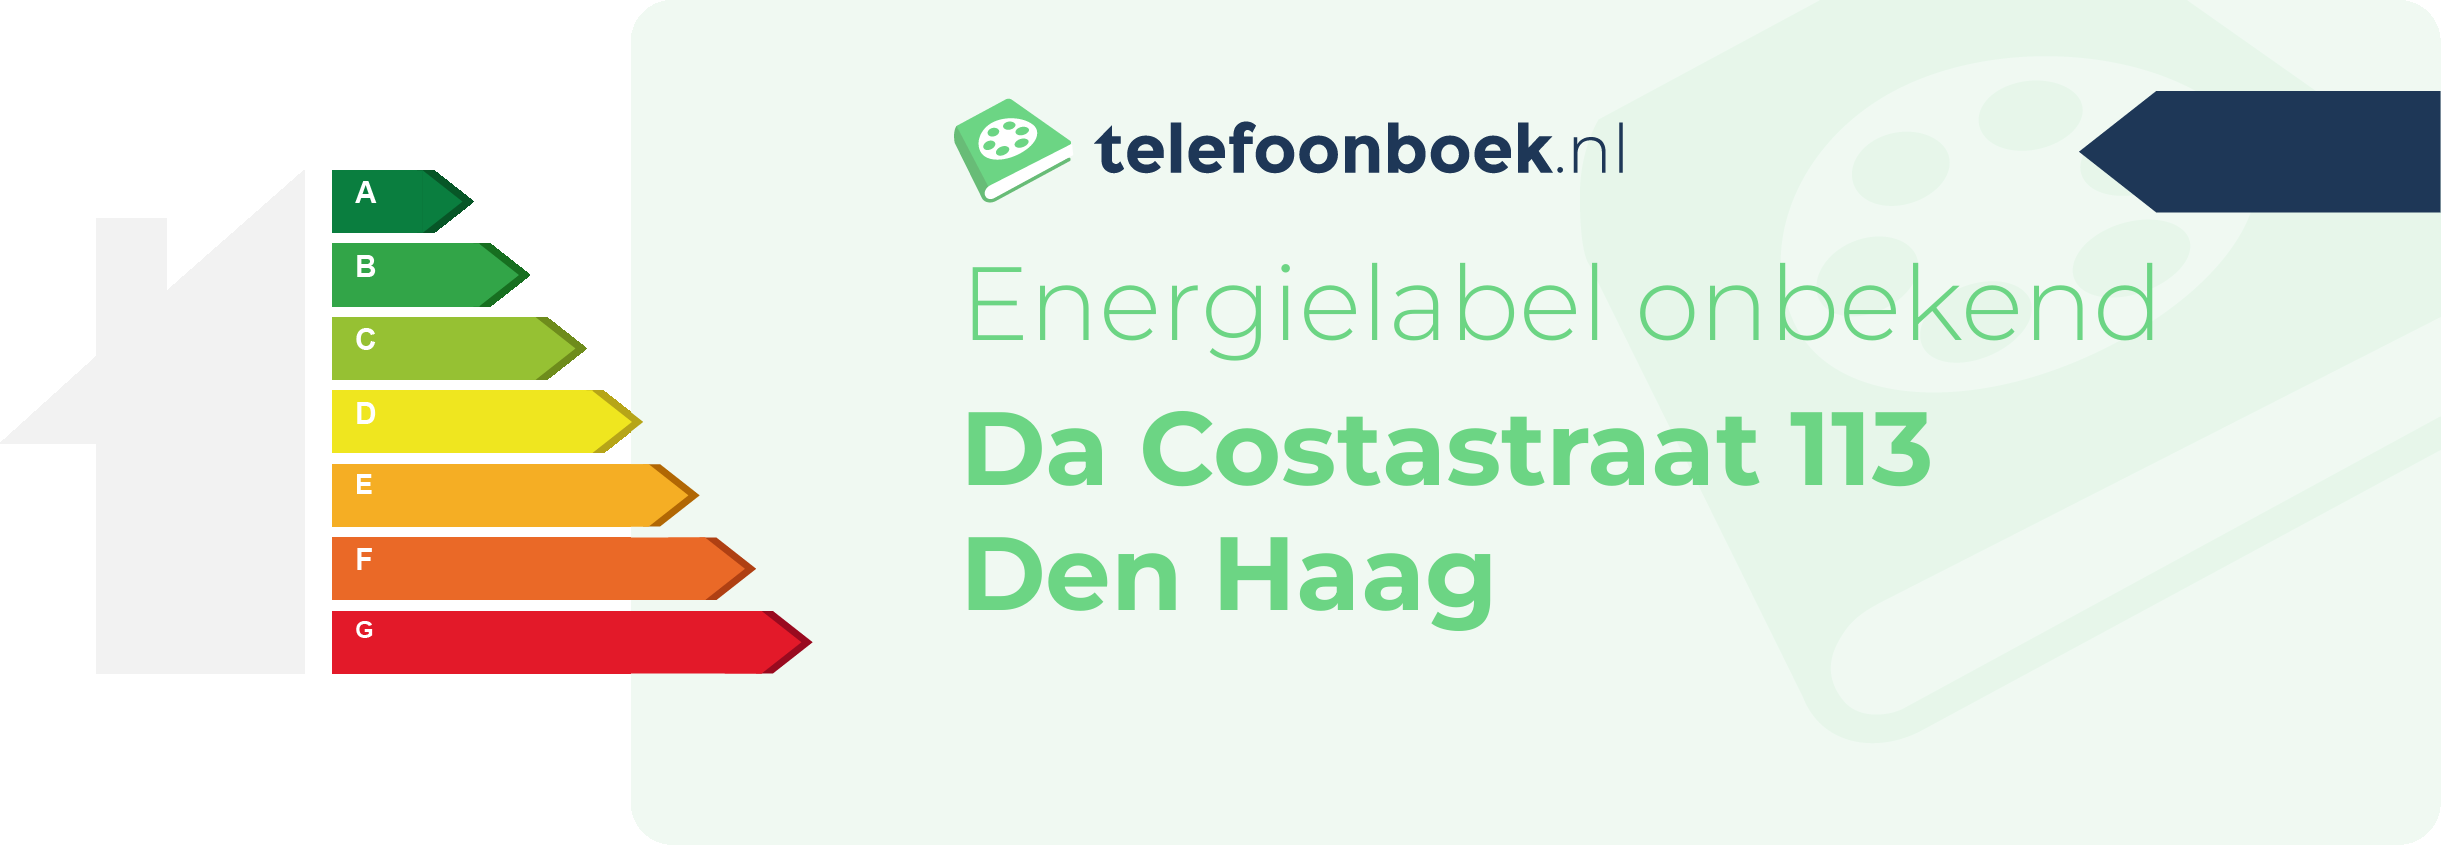 Energielabel Da Costastraat 113 Den Haag